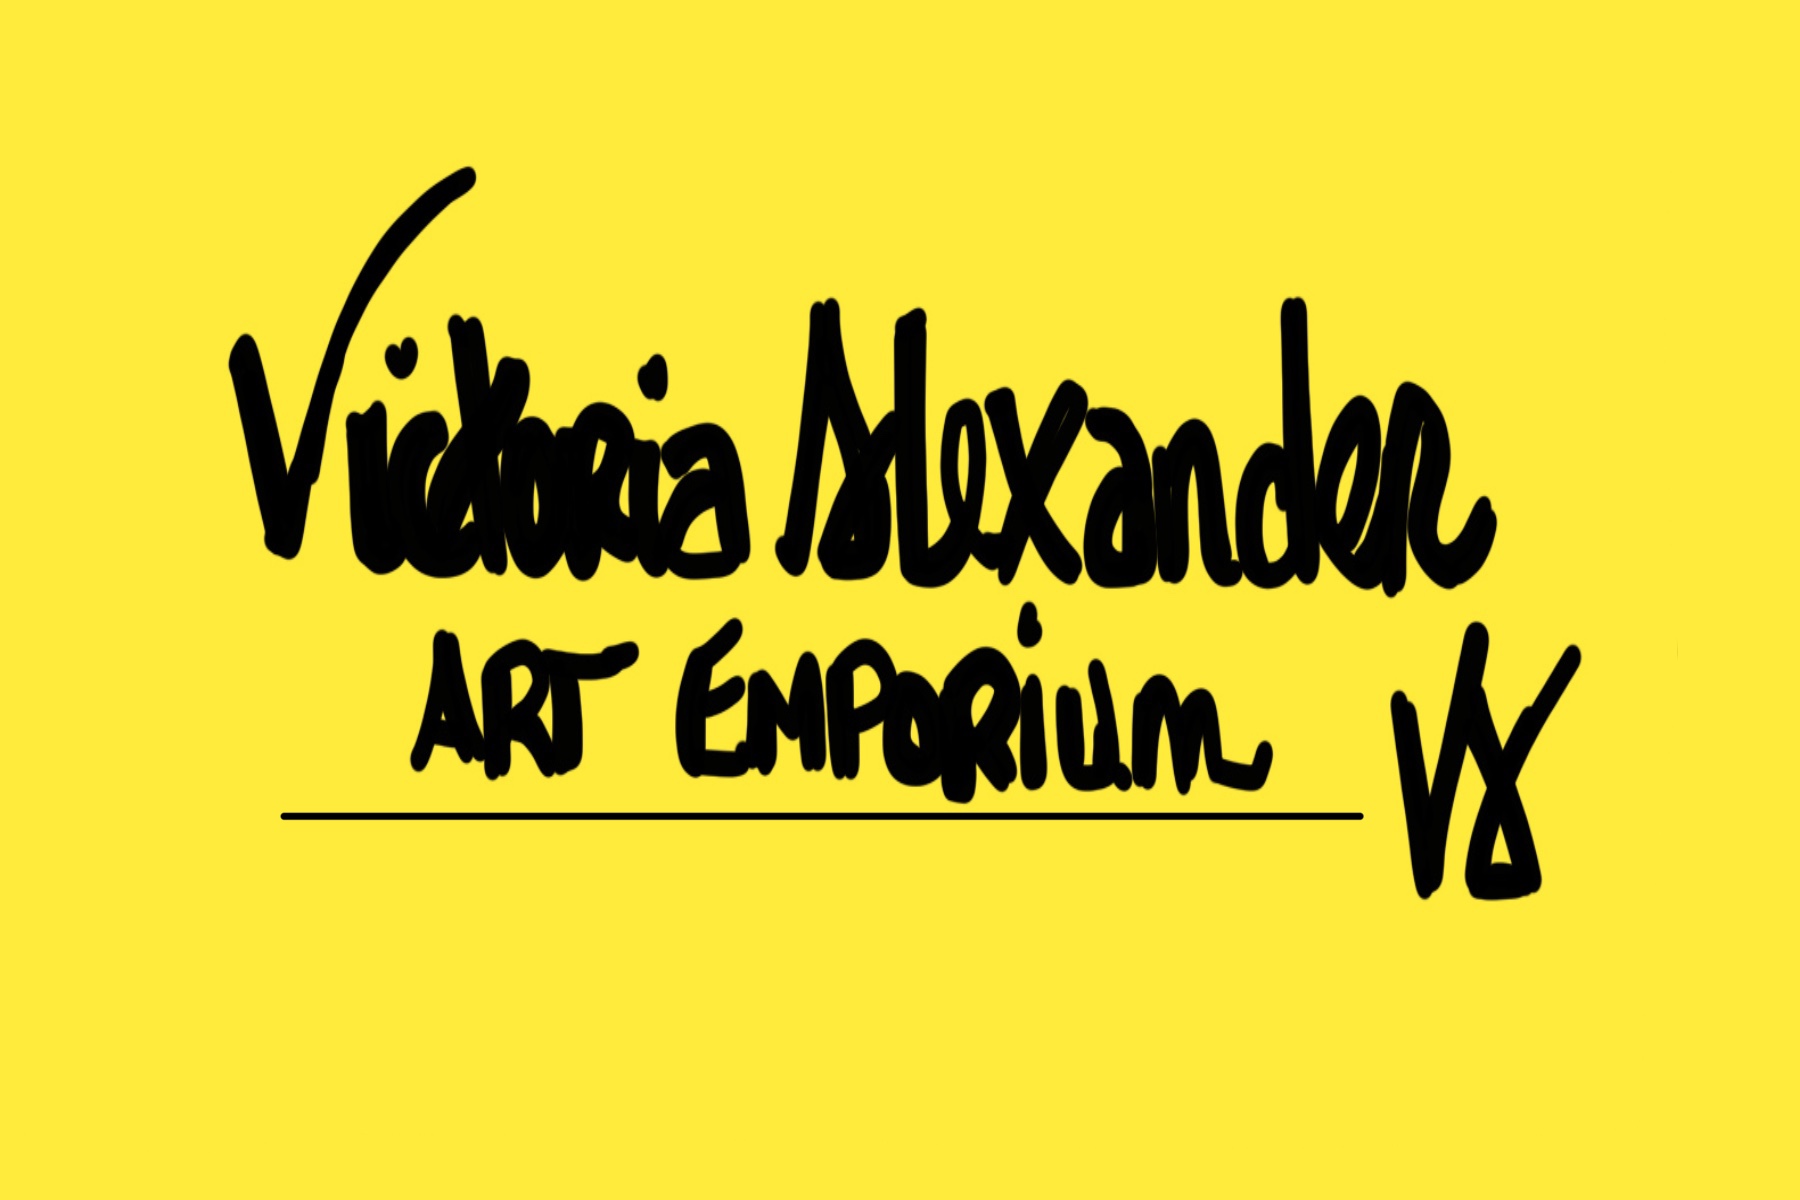 Victoria Alexander Art Emporium